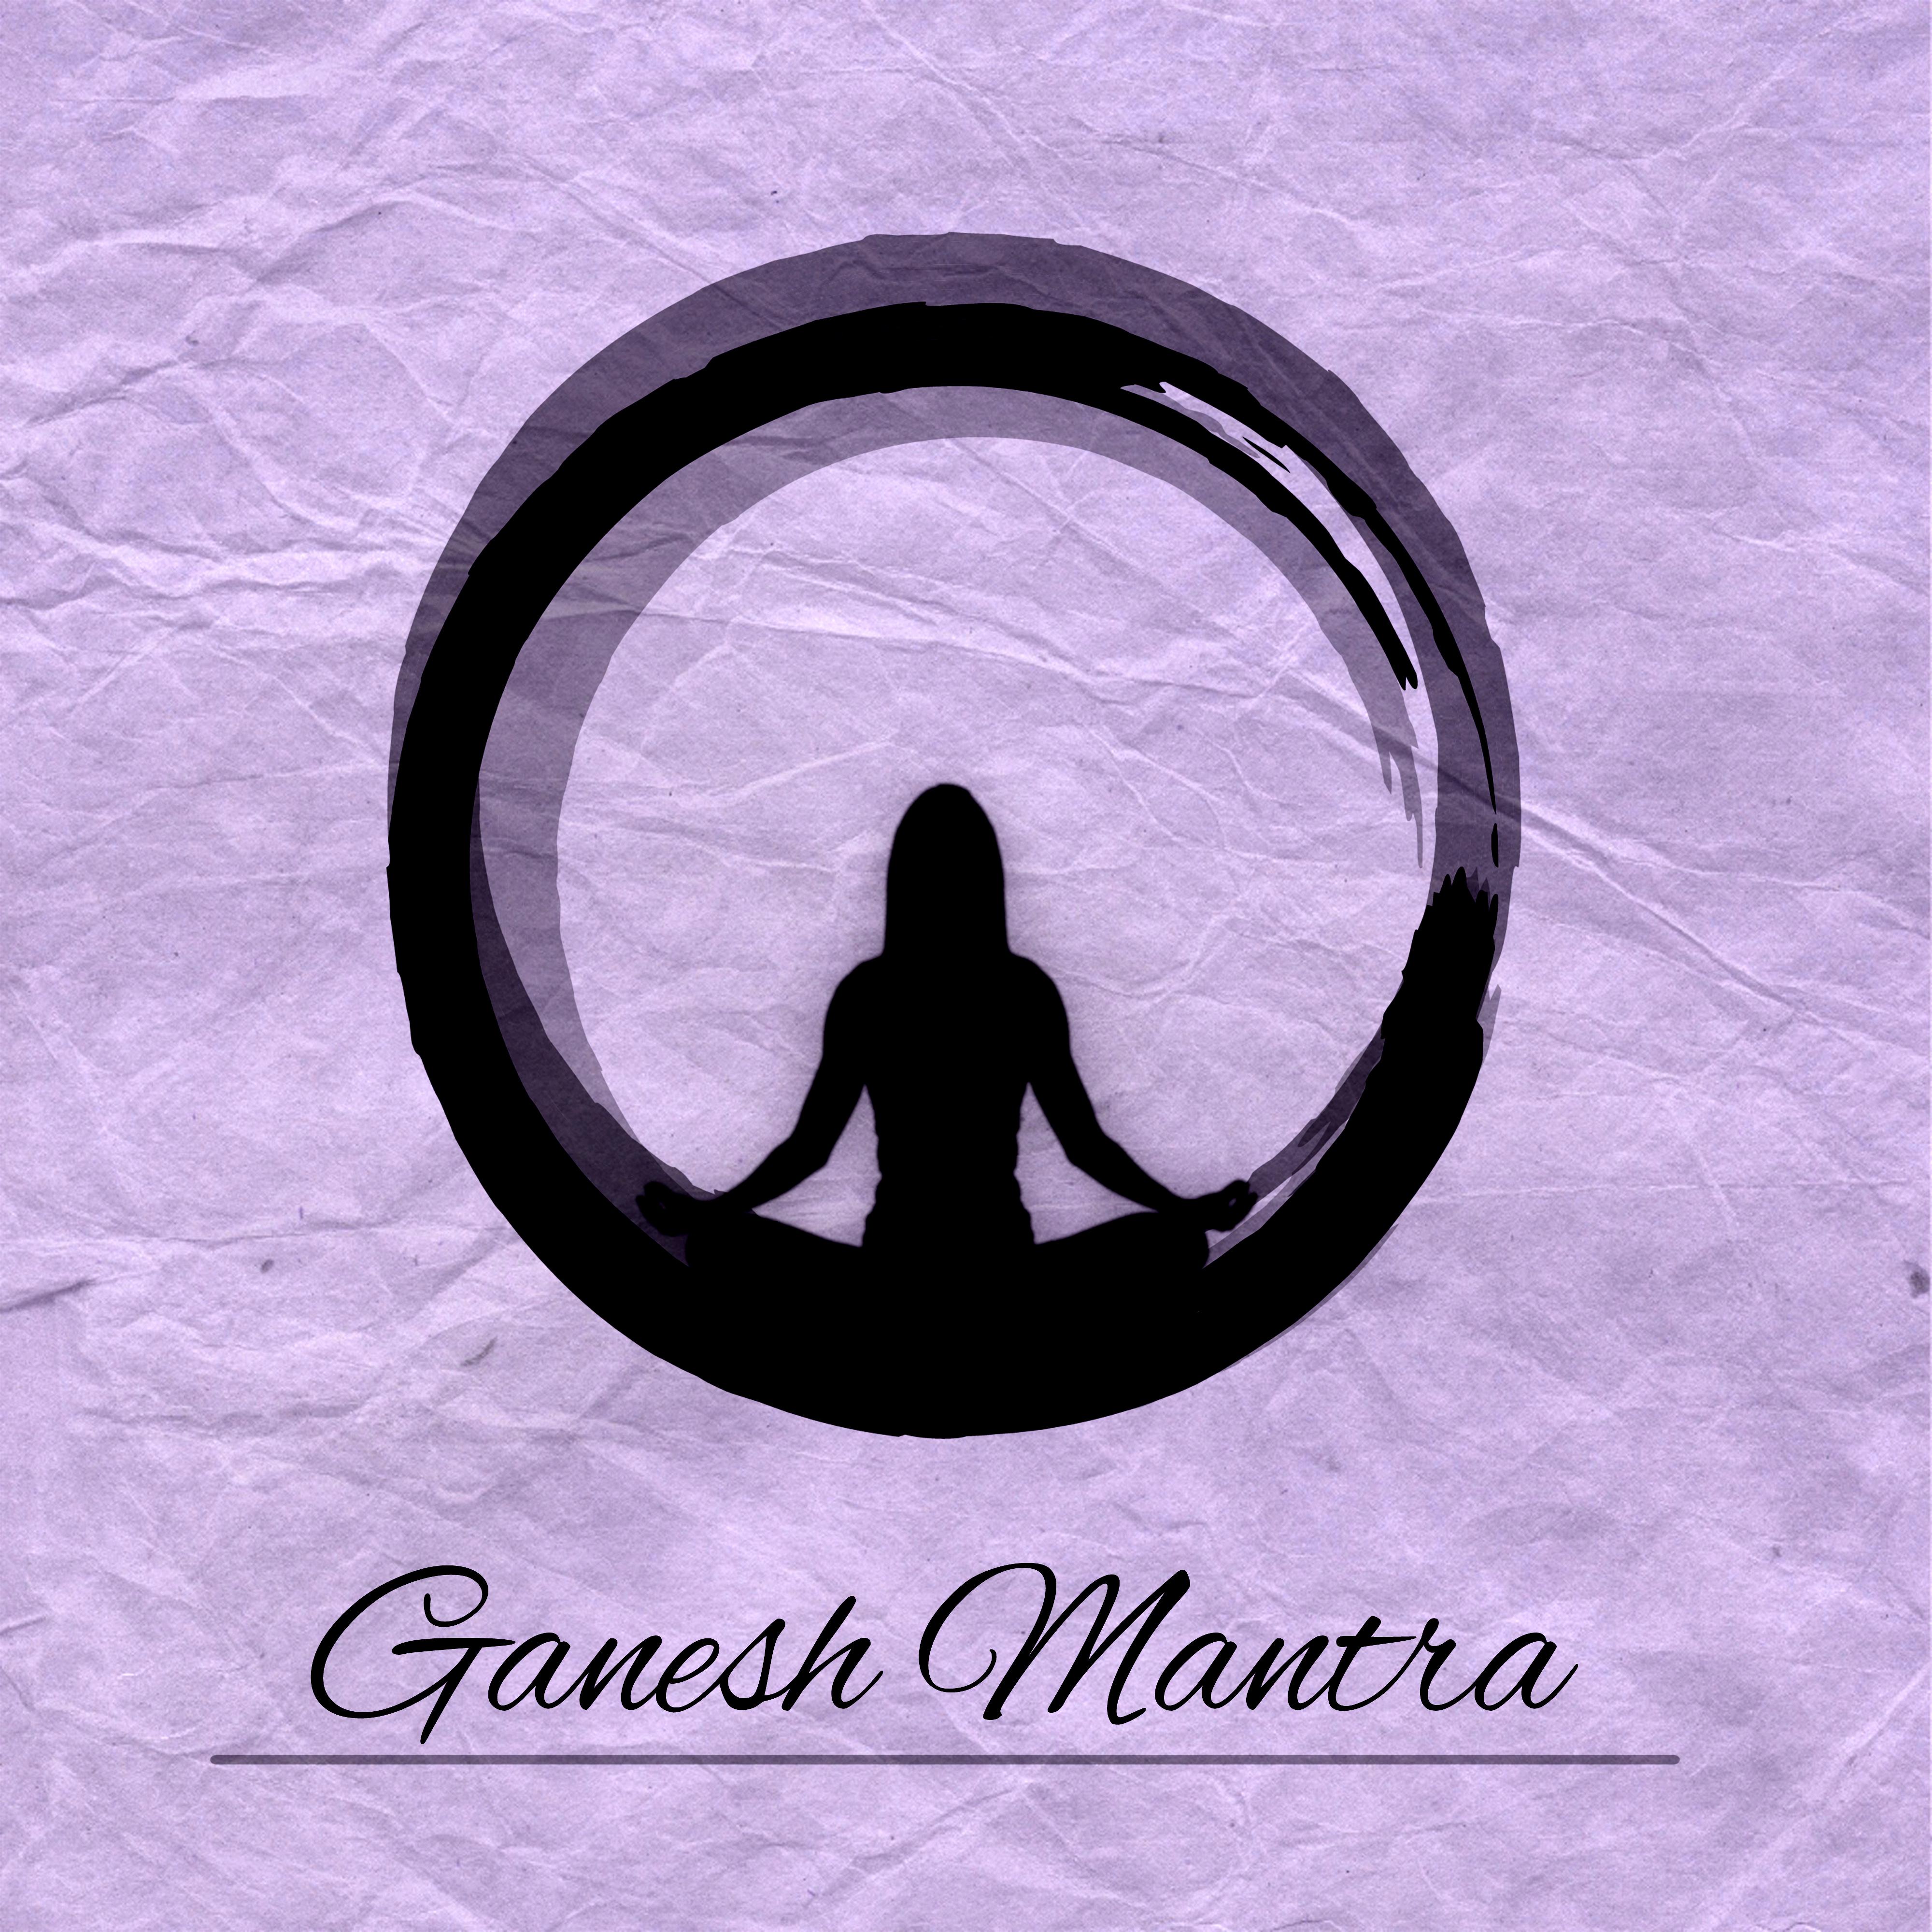 Ganesh Mantra - New Age Music for Meditation, Yoga Zen Music, Mindfulness Meditation, Vandana Shiva, Buddha Lounge, Deep Relaxation, Mind & Harmony